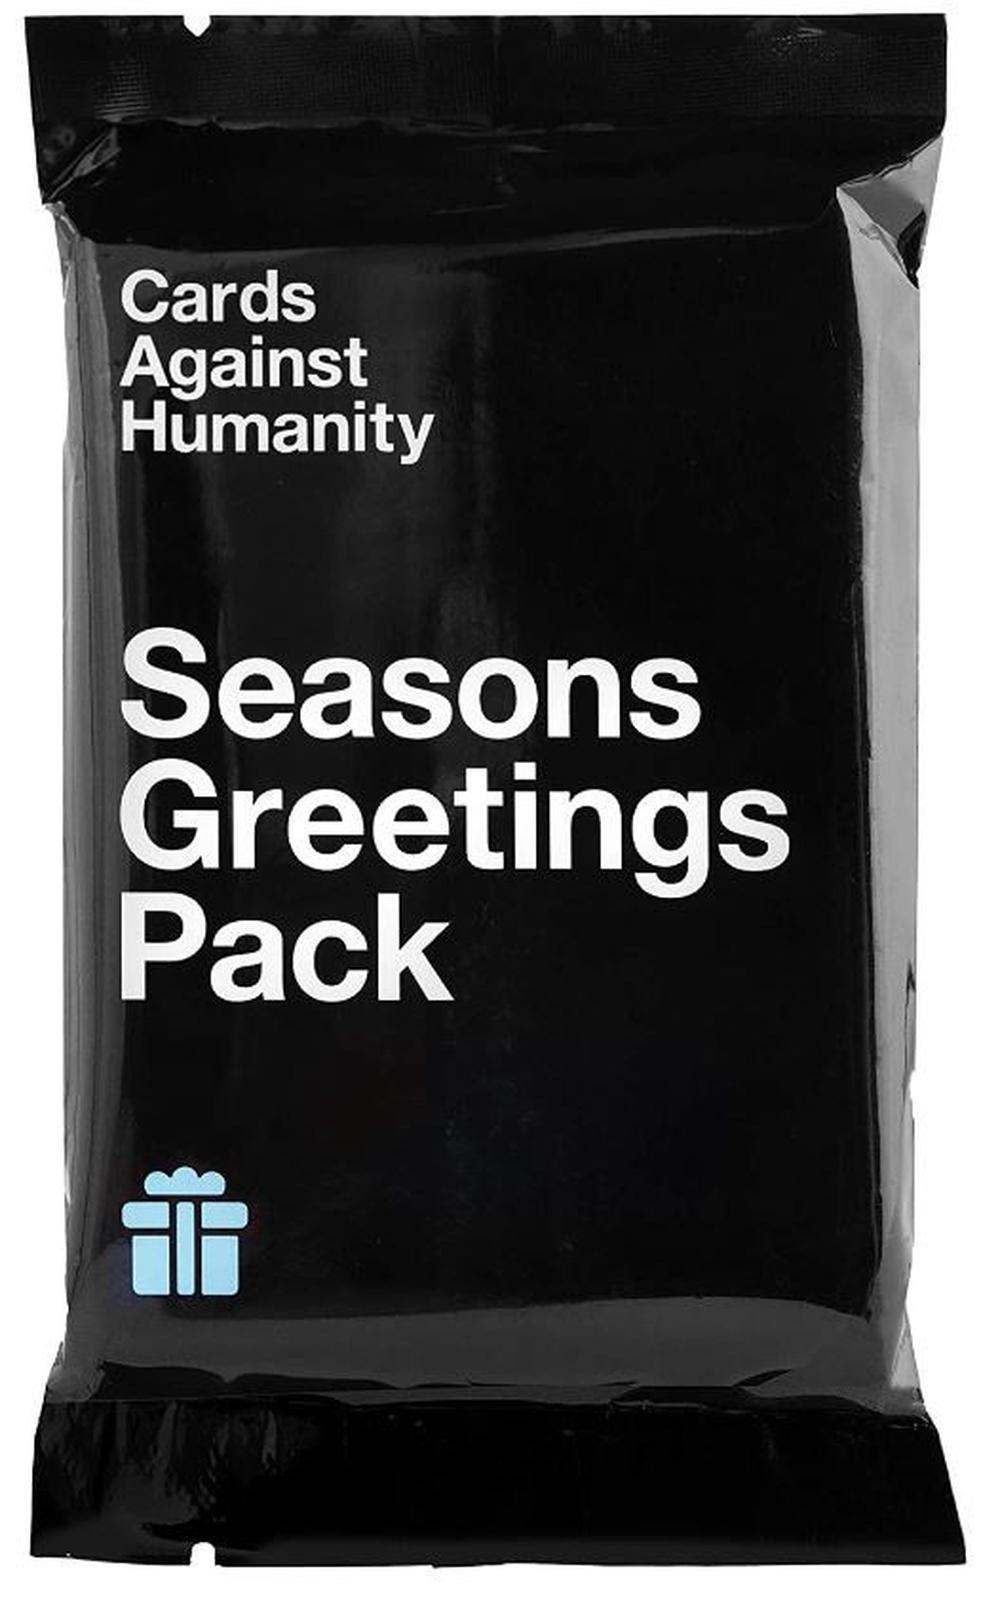 Extensie - Cards Against Humanity - Seasons Greetings Pack | Cards Against Humanity